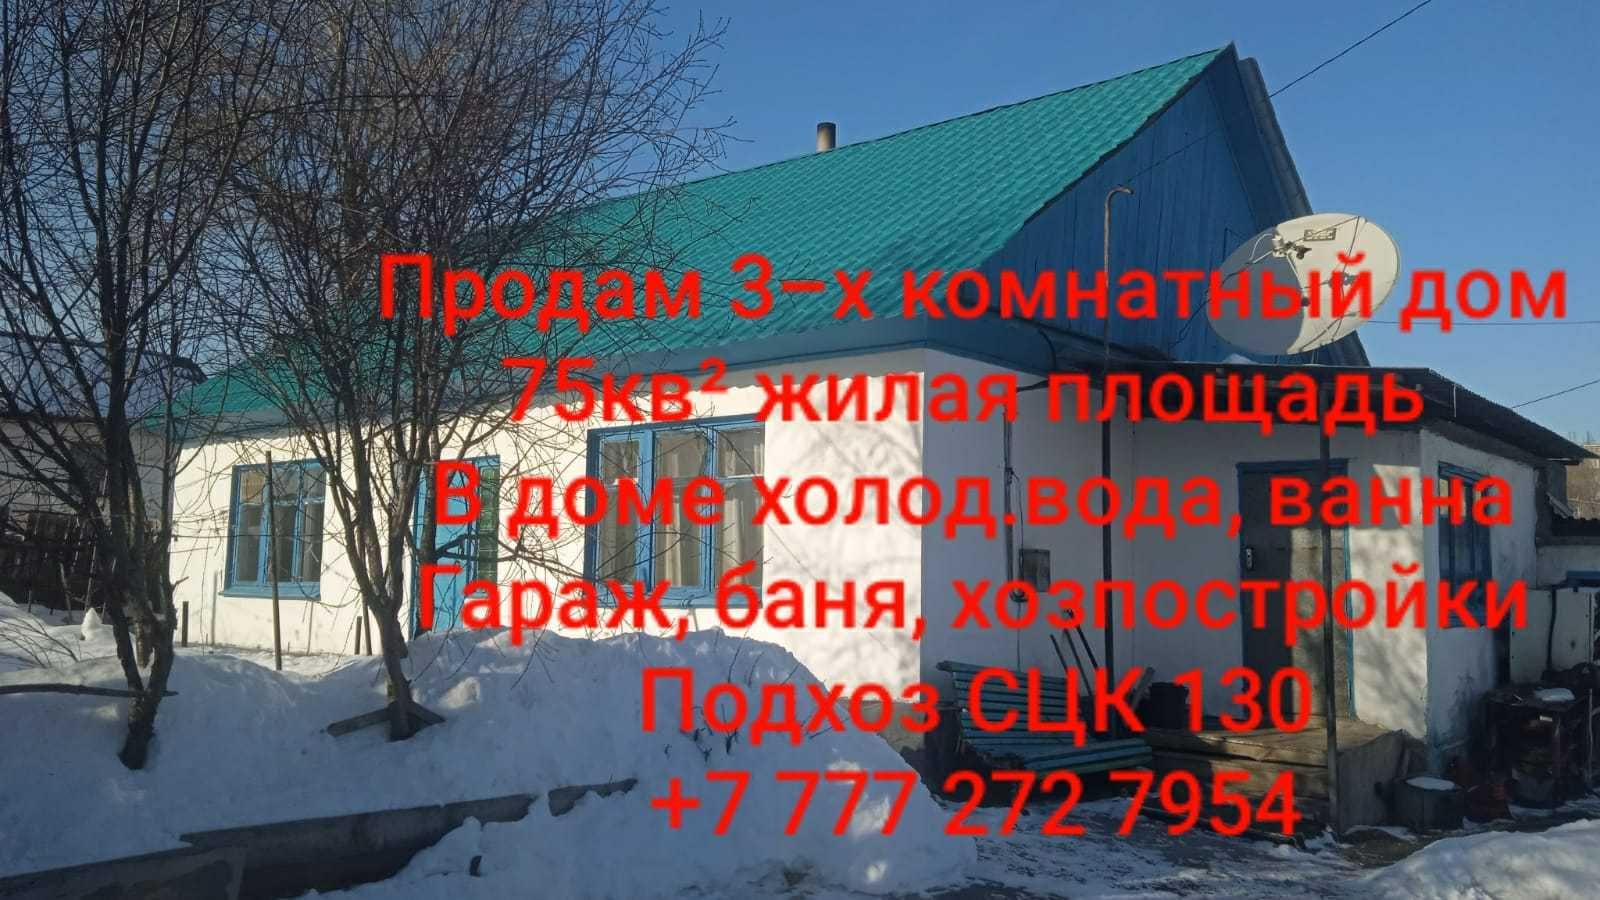 Продам 3-х комнатный дом 75 кв2  . г. Усть-Каменогорск